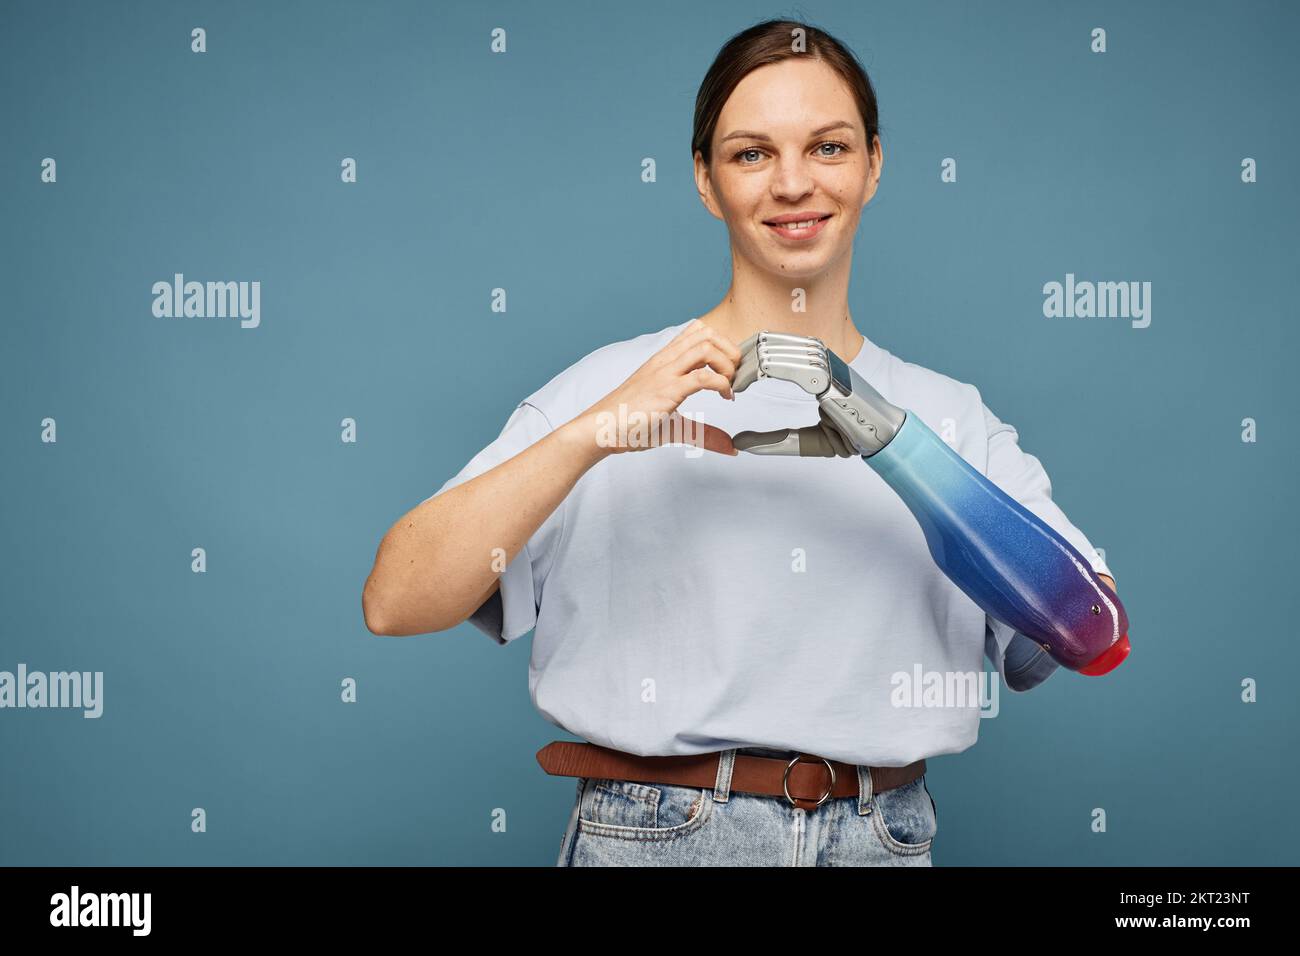 Porträt einer lächelnden Frau mit bionischer Hand, die eine Herzgeste macht Stockfoto